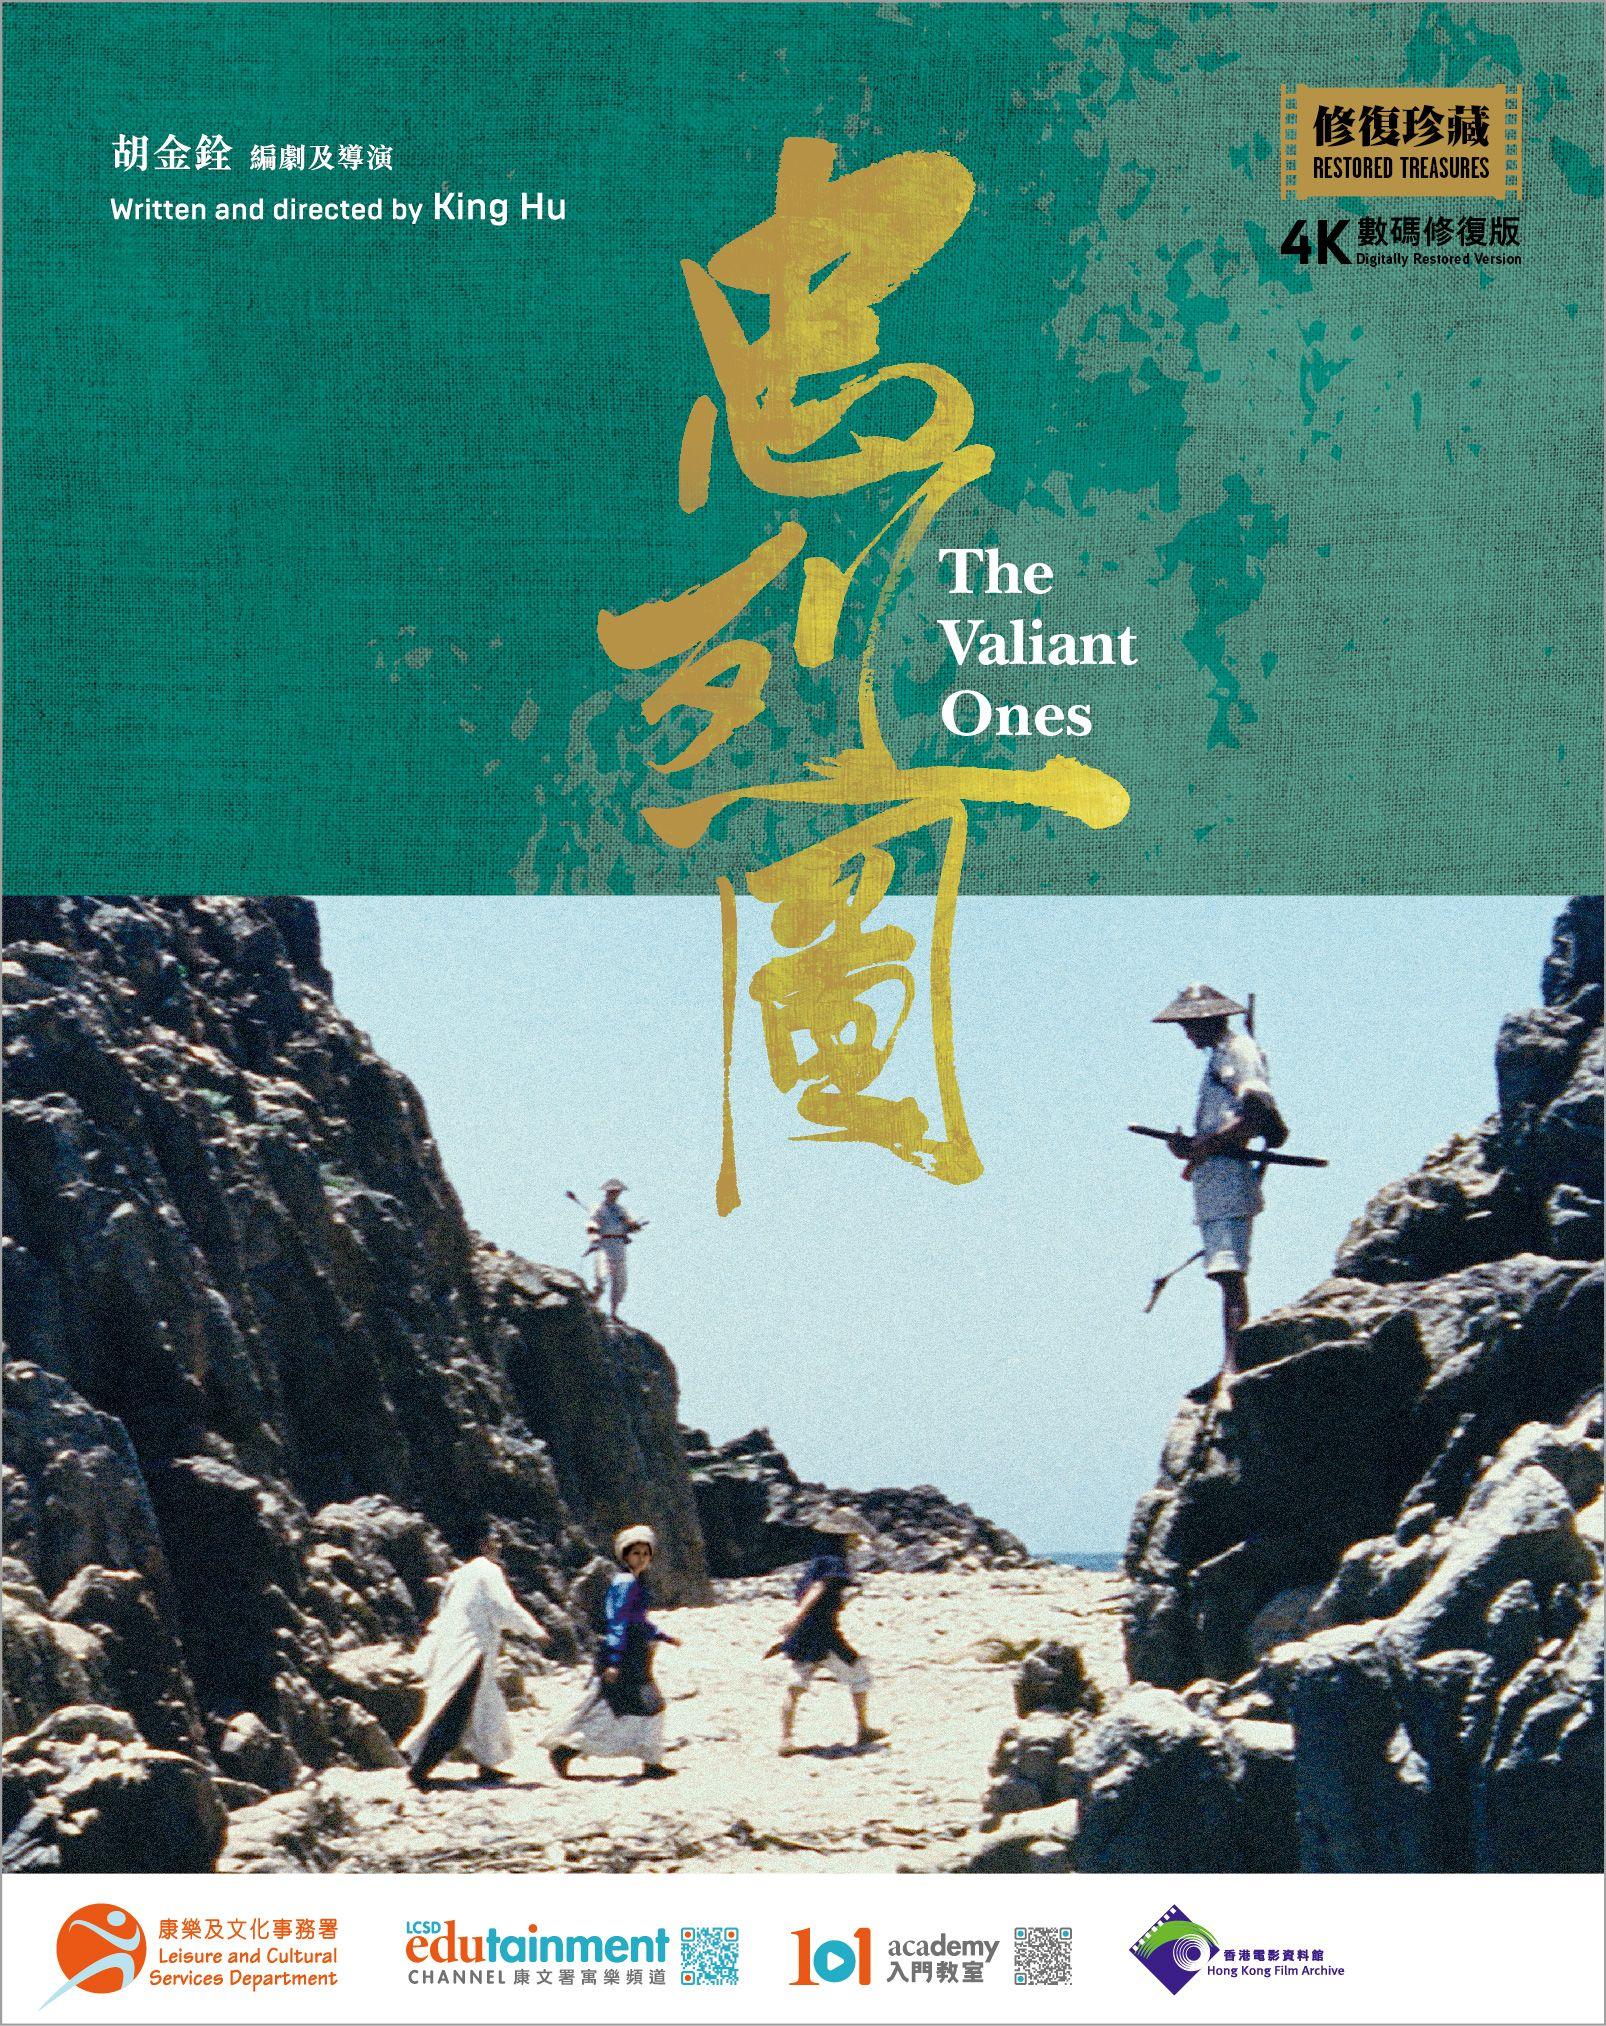 康樂及文化事務署香港電影資料館的館藏電影《忠烈圖》（1975）4K數碼修復版藍光影碟現已公開發售。《忠烈圖》由身兼導演、編劇及出品人的胡金銓拍攝，徐楓、白鷹和喬宏主演。圖為影碟封面。